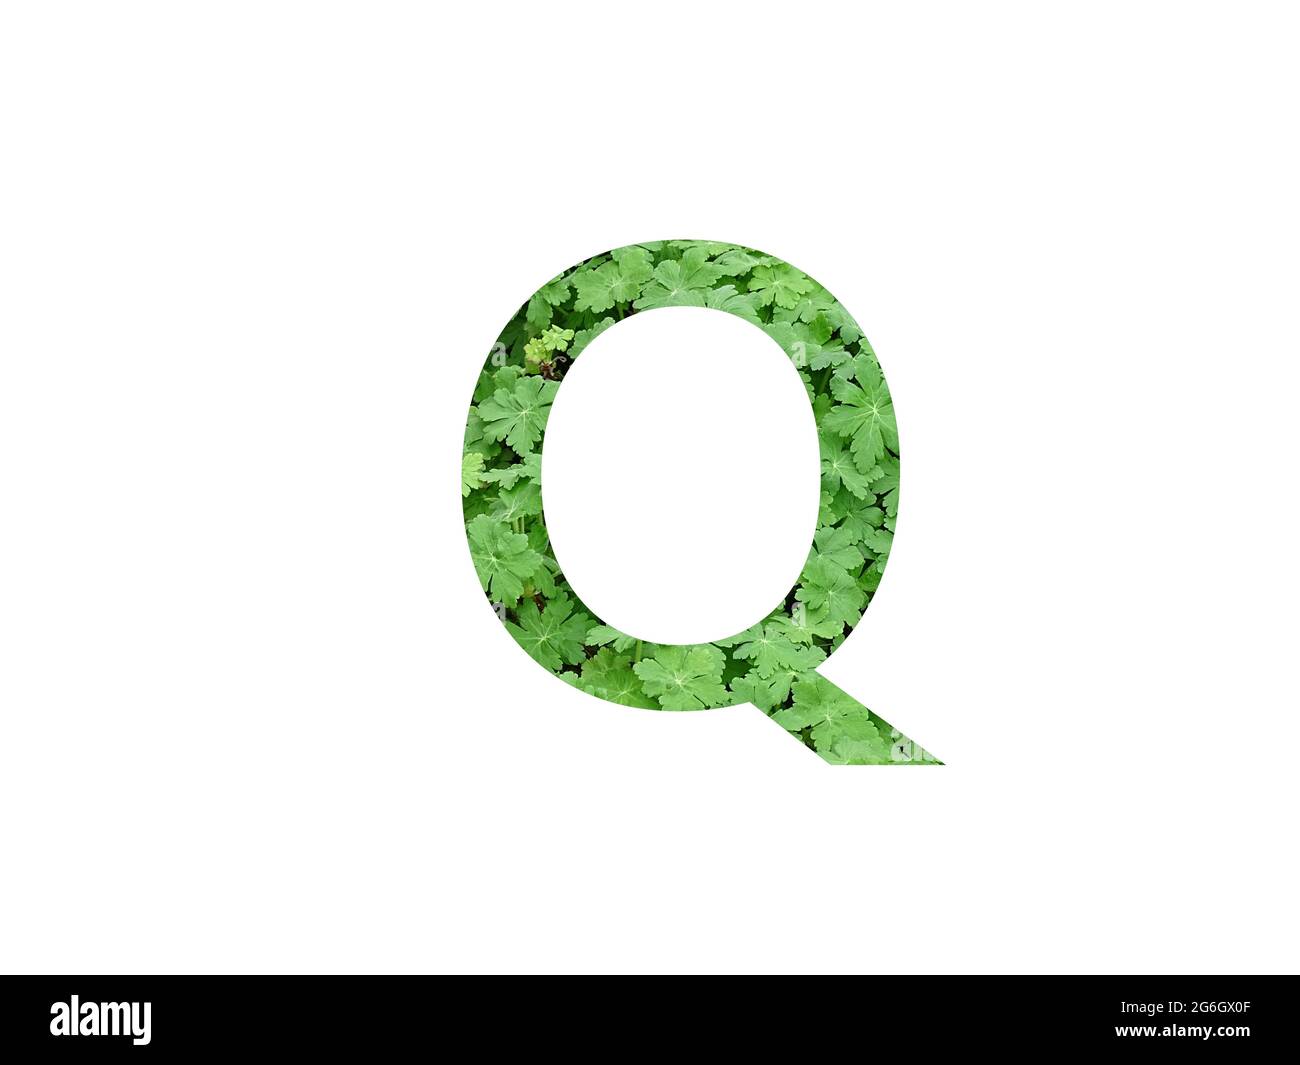 Lettera Q dell'alfabeto a foglia verde di geranio, isolato su fondo bianco Foto Stock